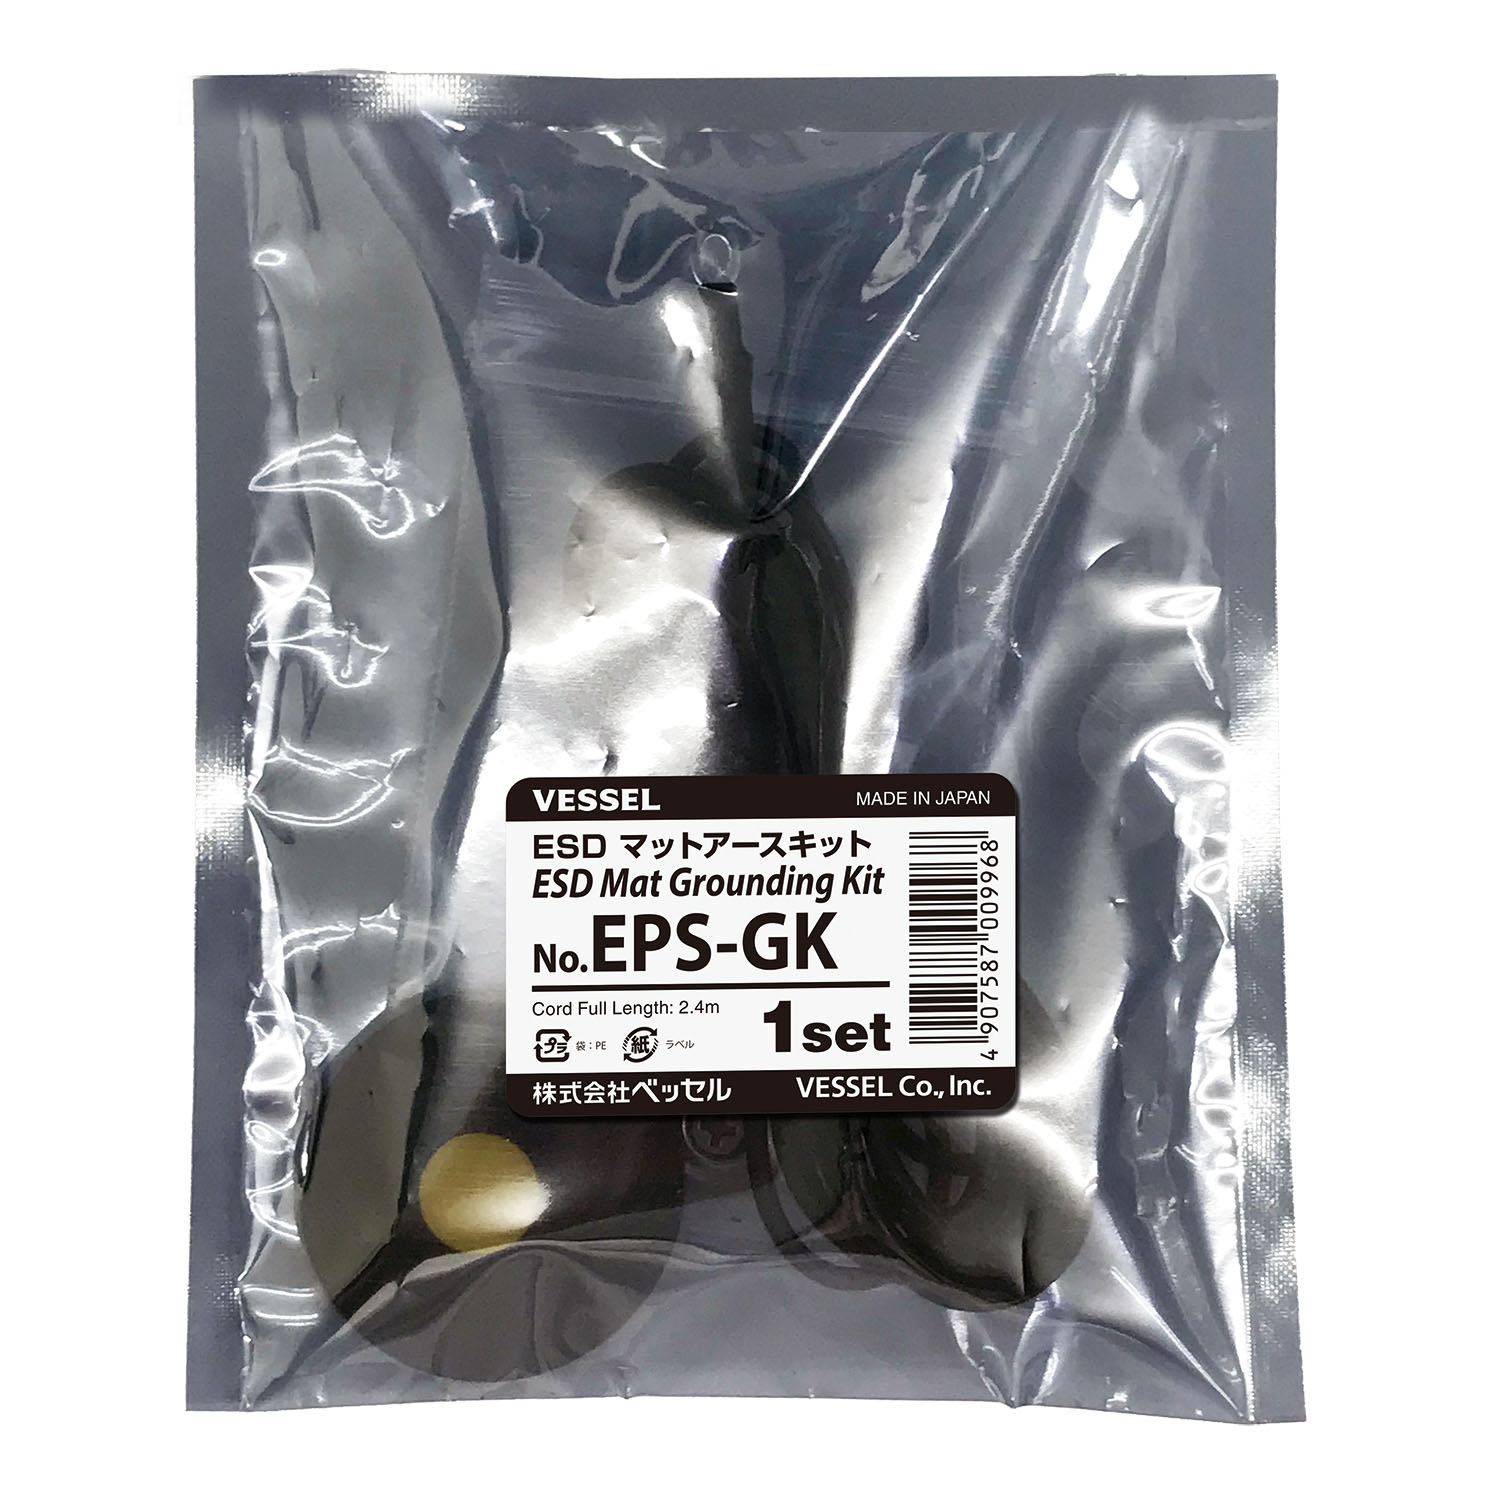 ESDマットアースキット No.EPS-GK | 製品情報 | 株式会社ベッセル